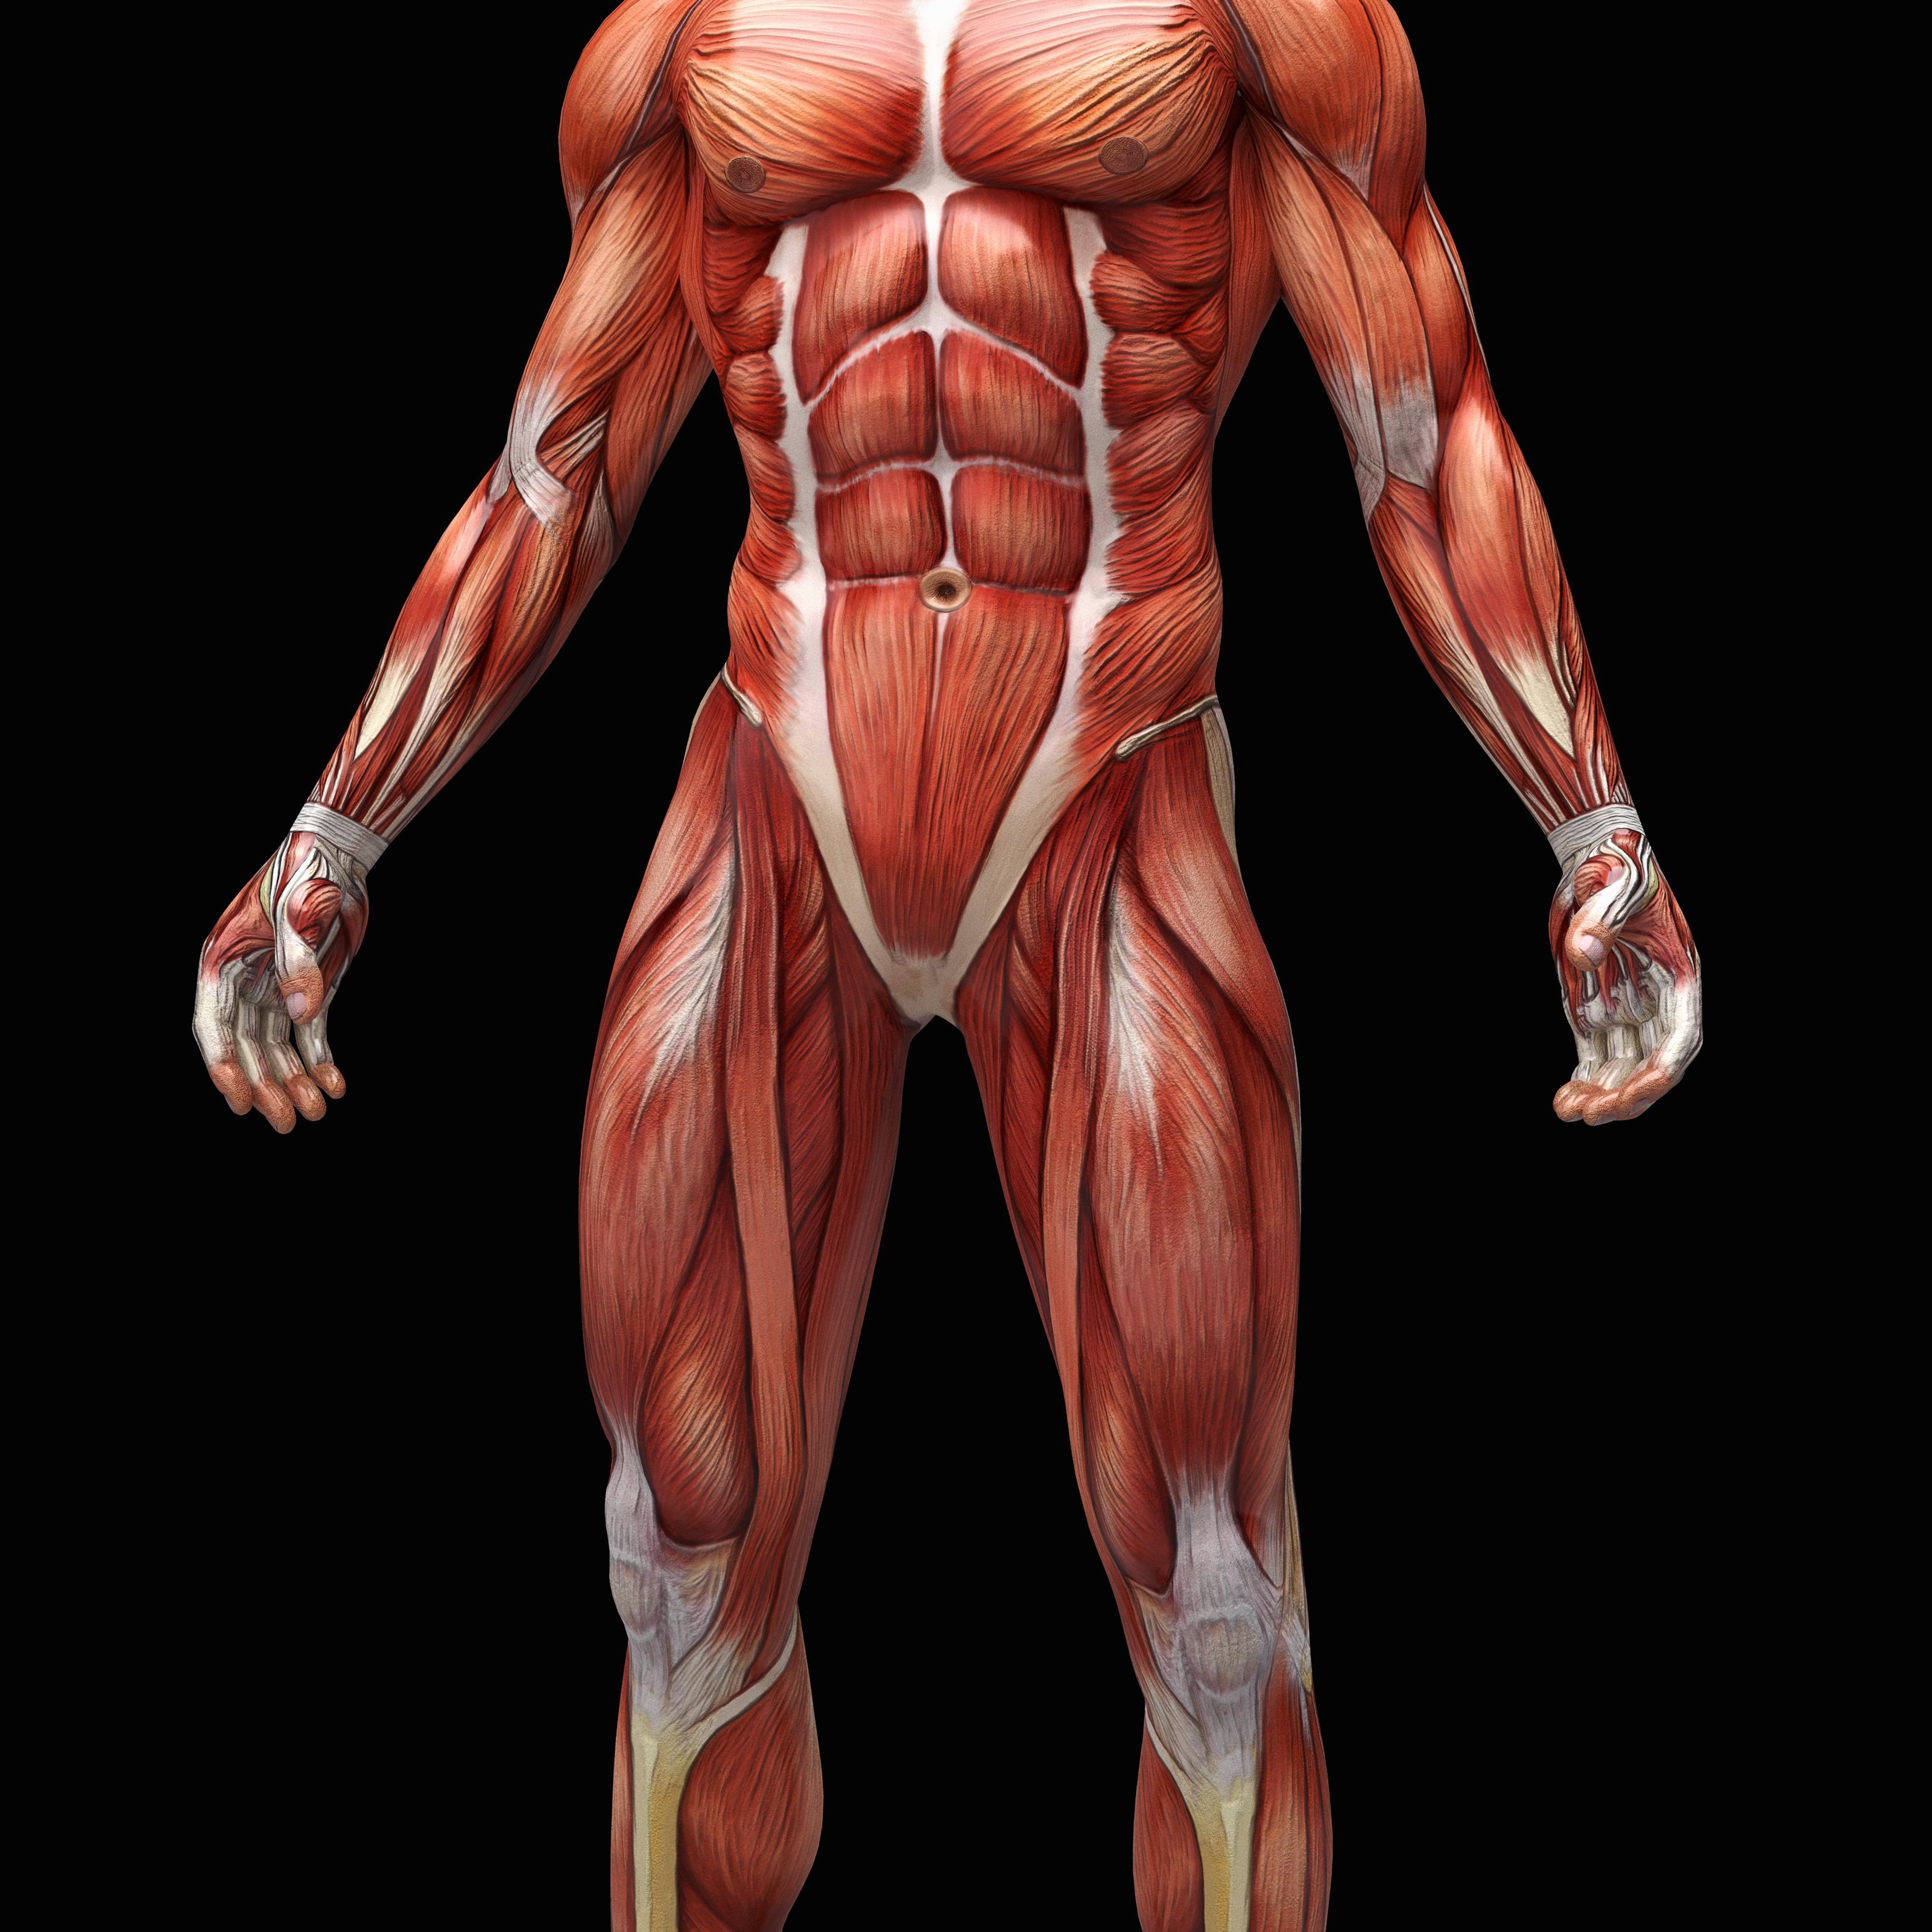 Au! 37+ Sannheter du Ikke Visste om Male Body Structure And Organs